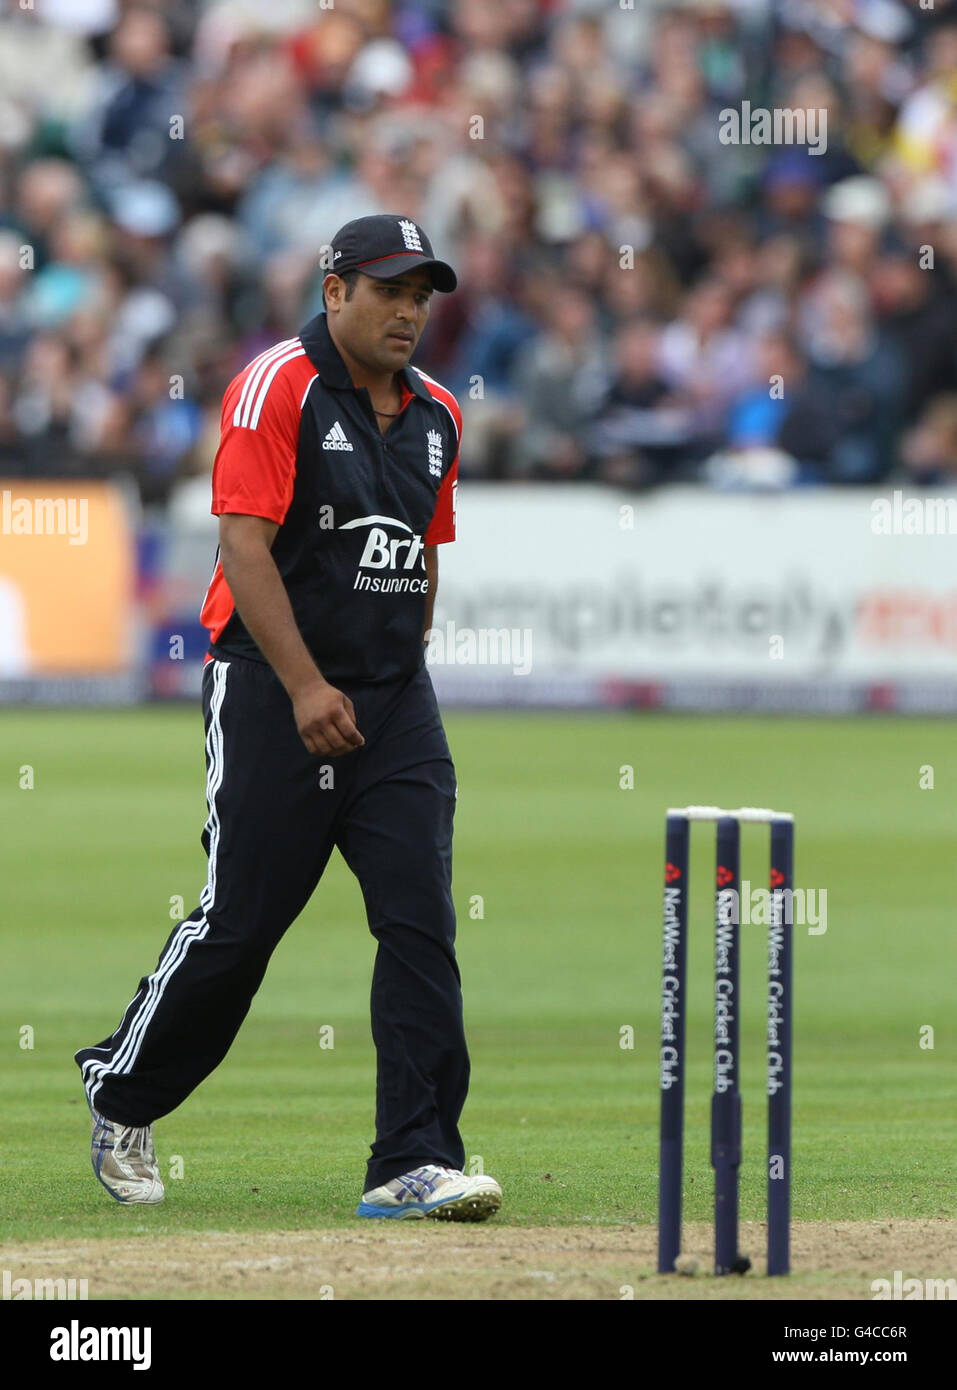 Le Samit Patel d'Angleterre dans le champ montre sa déjection pendant le match international Twenty20 au terrain de comté, Gloucestershire. Banque D'Images